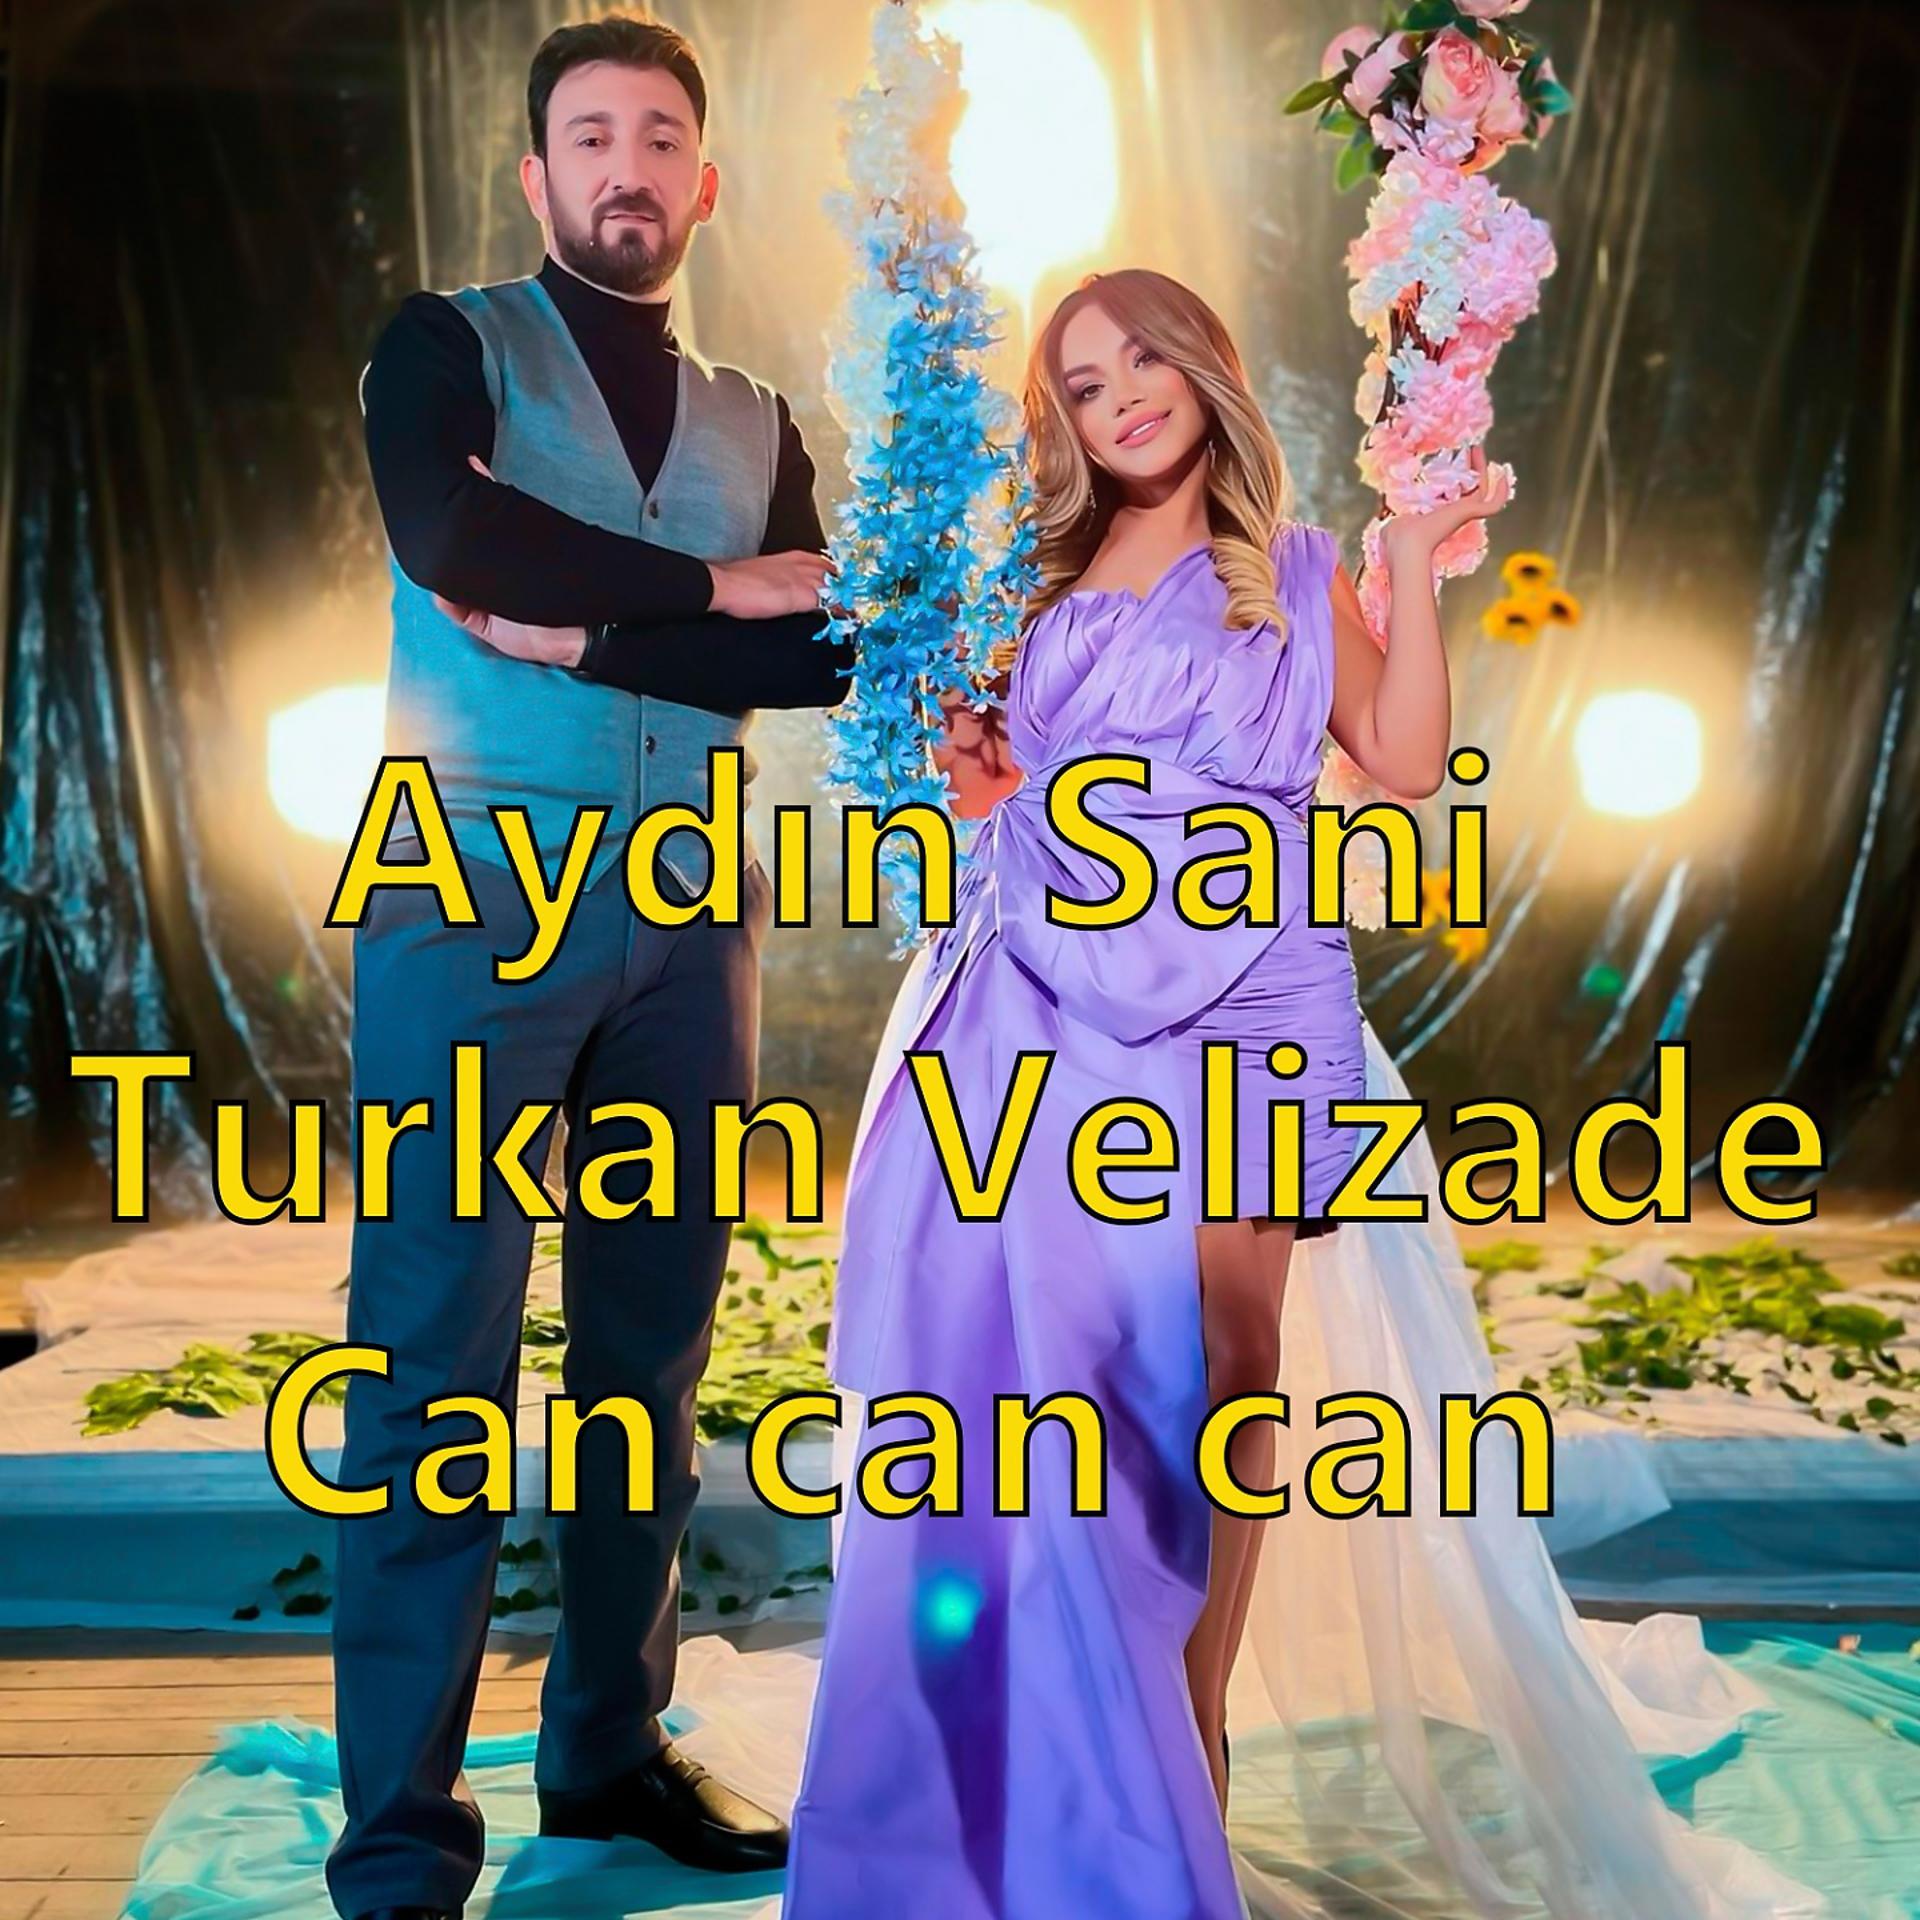 Turkan Velizade - фото